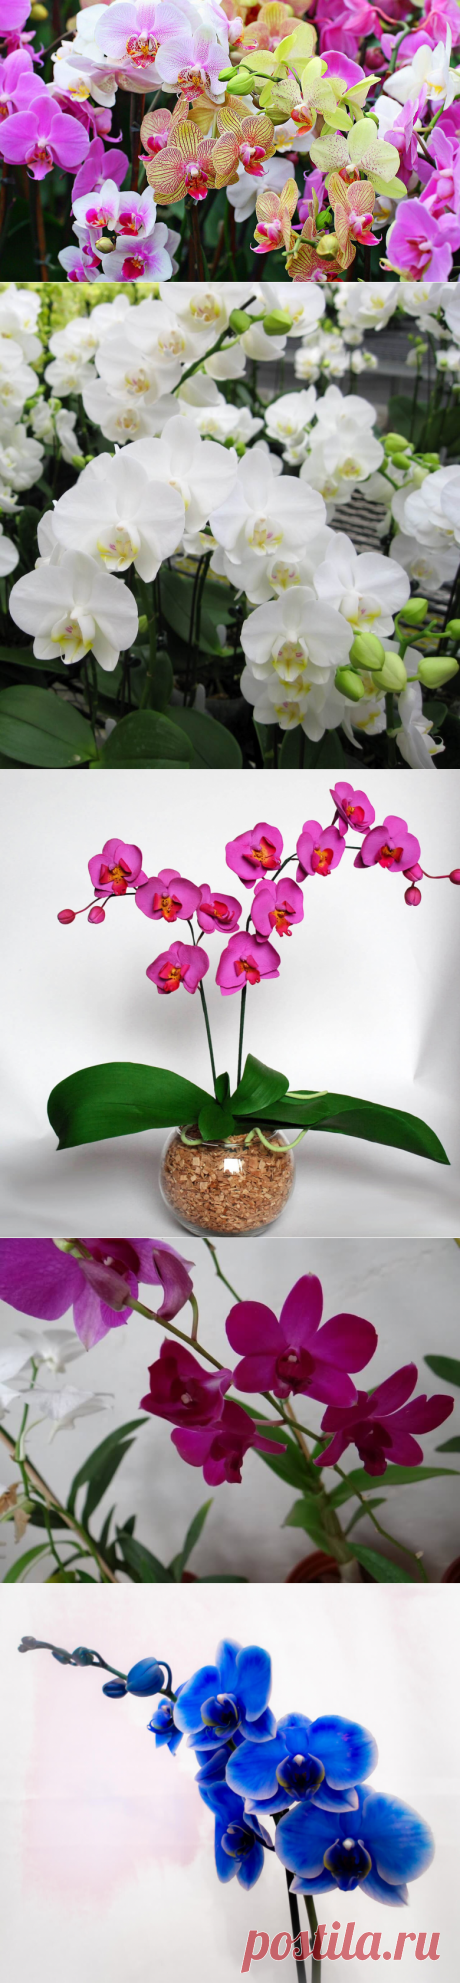 Орхидея фаленопсис: уход– болезни– виды– размножение | Архидея